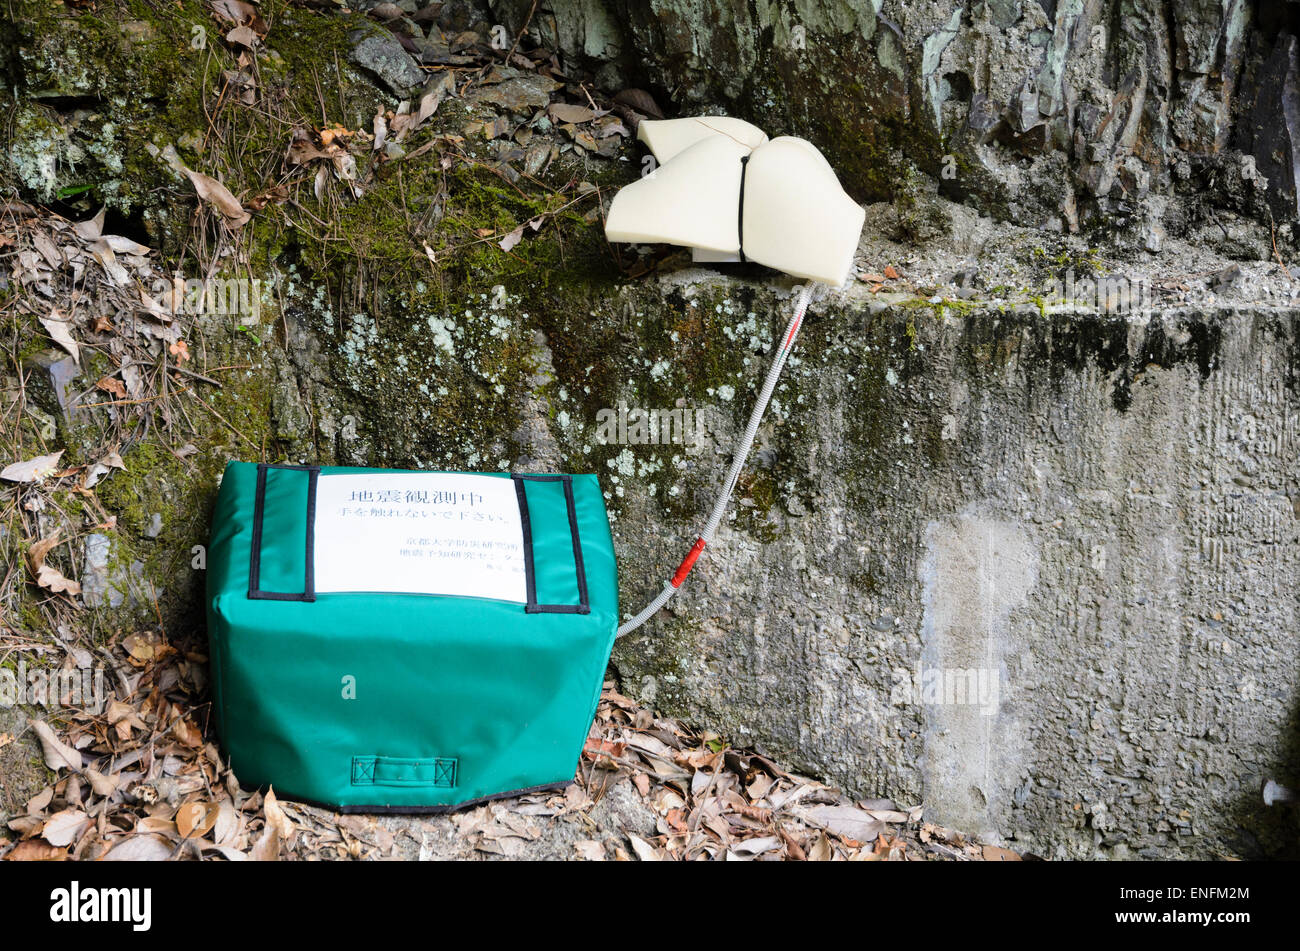 Am Straßenrand Seismometer / Seismograph, ein Instrument für die Erdbebenüberwachung in einer ländlichen Gegend von Japan verwendet. Erdbeben in Japan-Detektor. Seismologie. Stockfoto